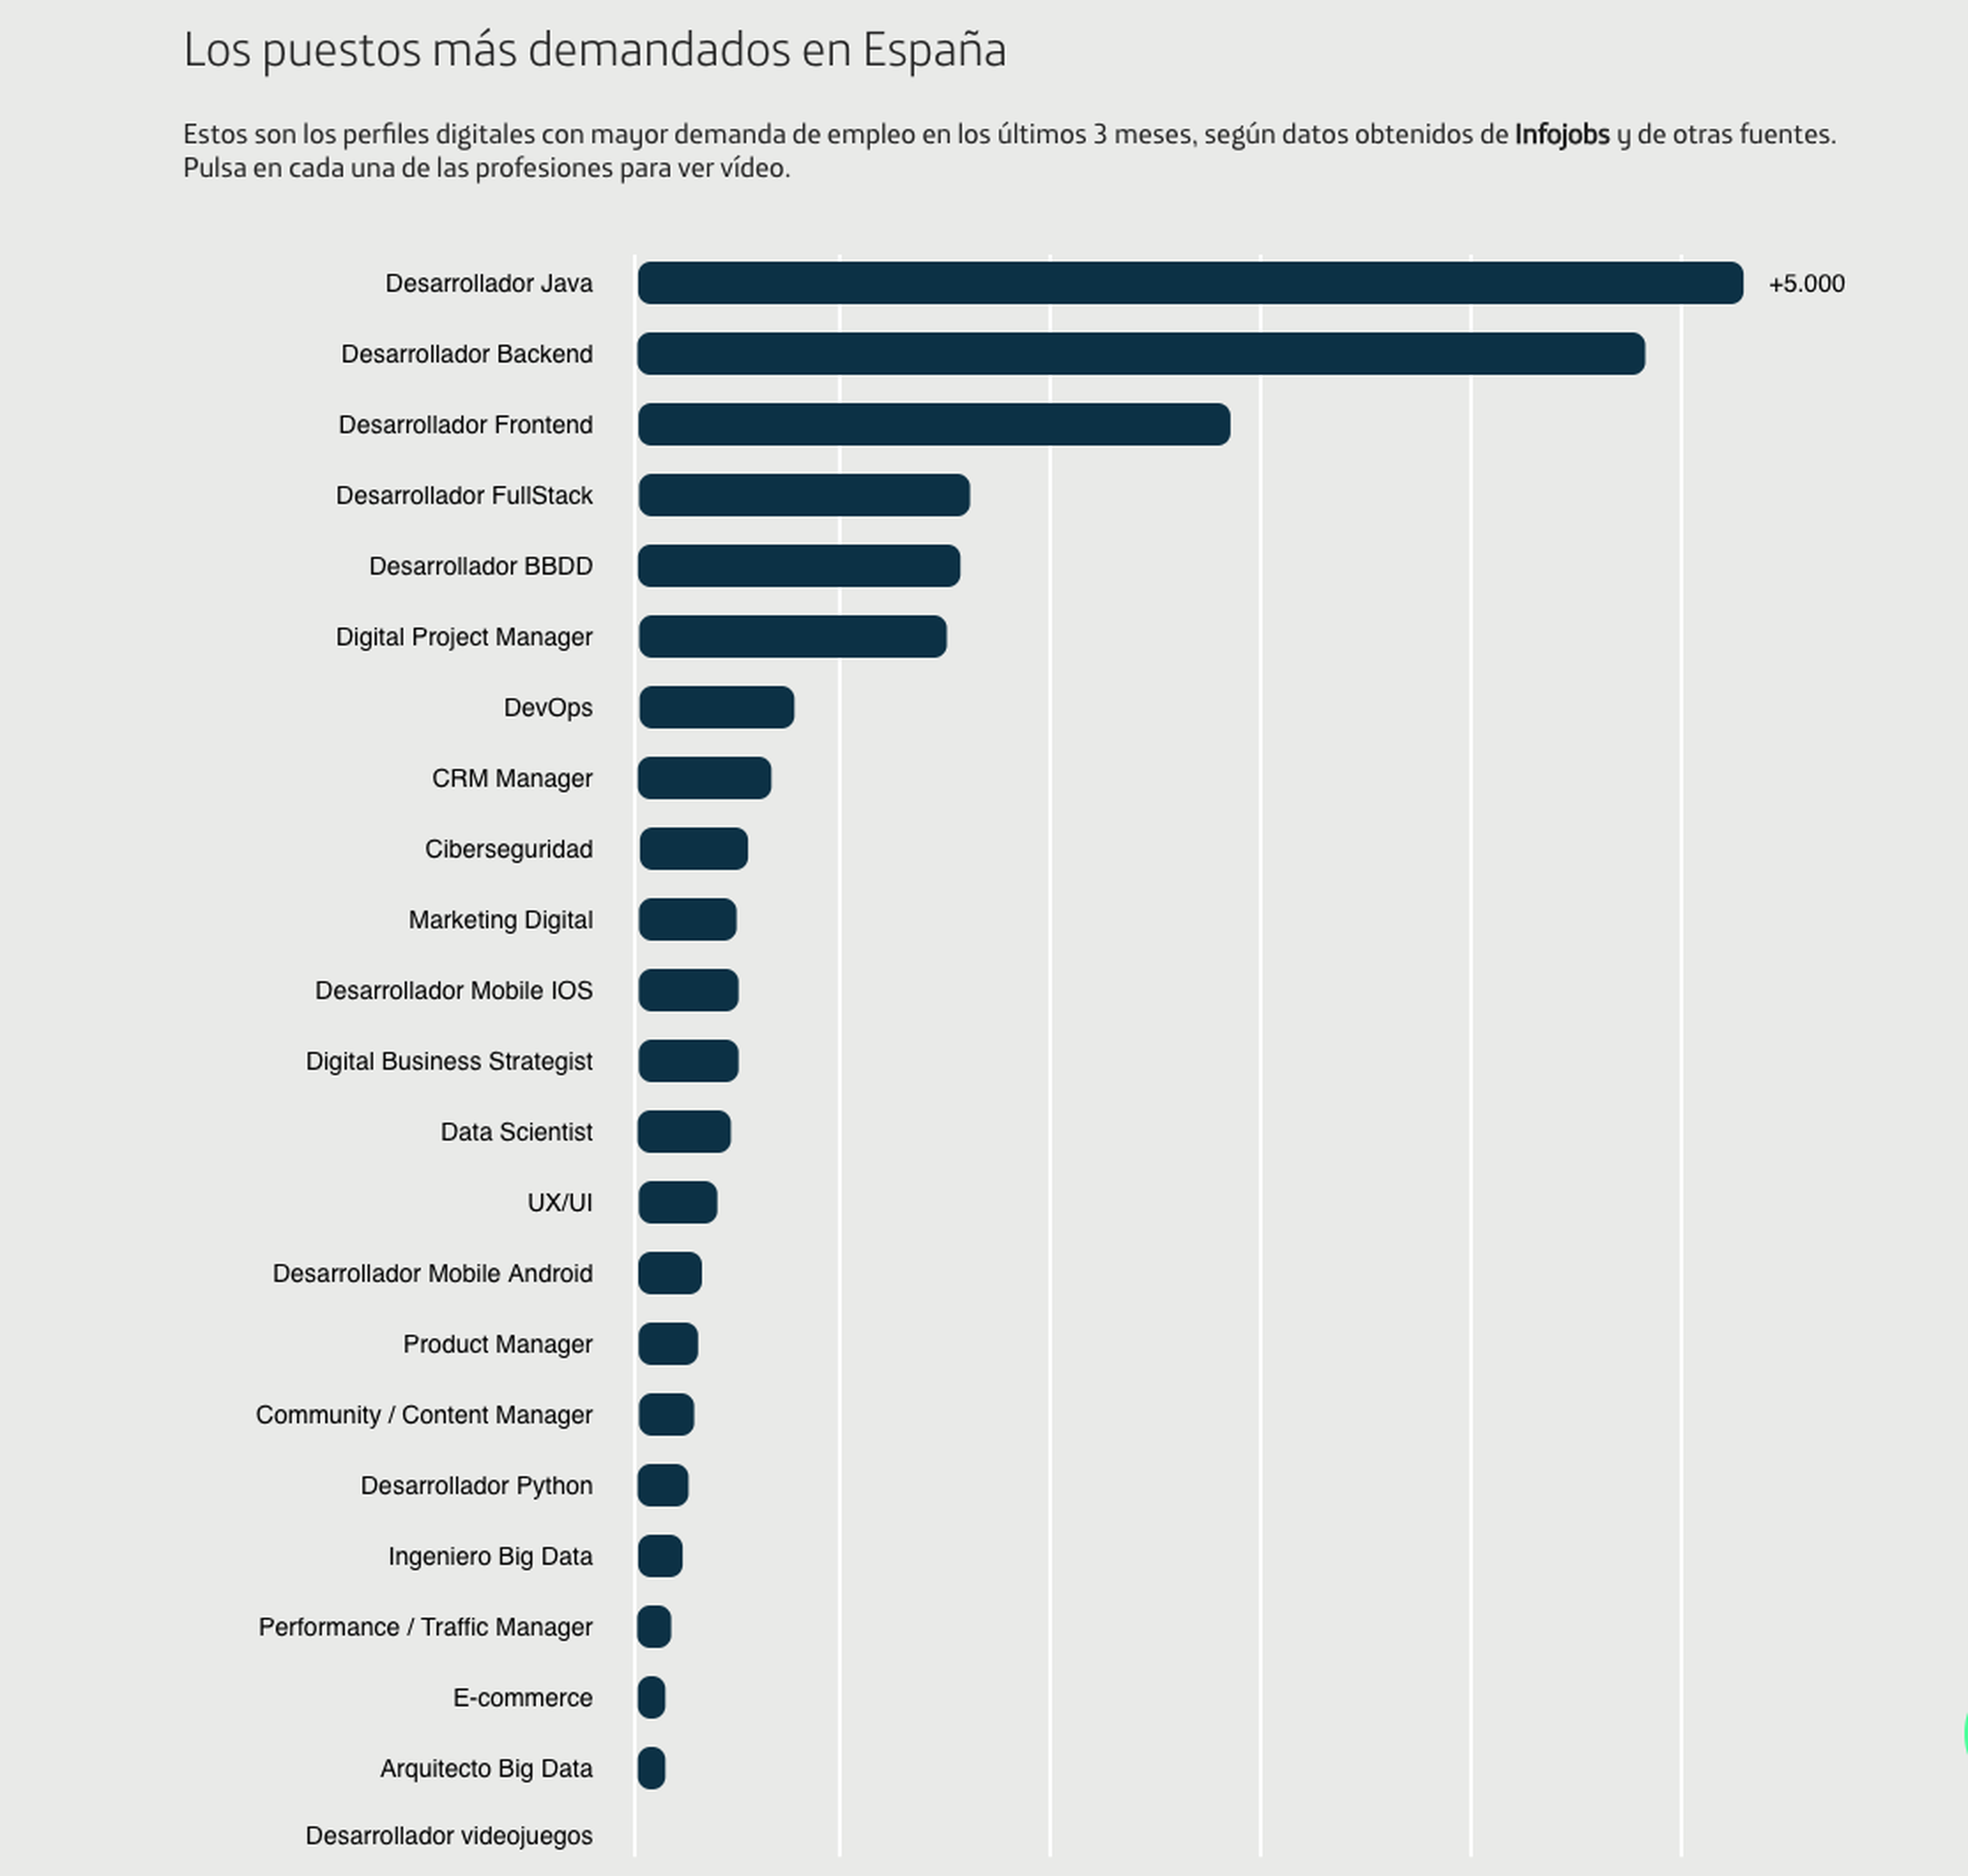 Los puestos digitales más demandados en España